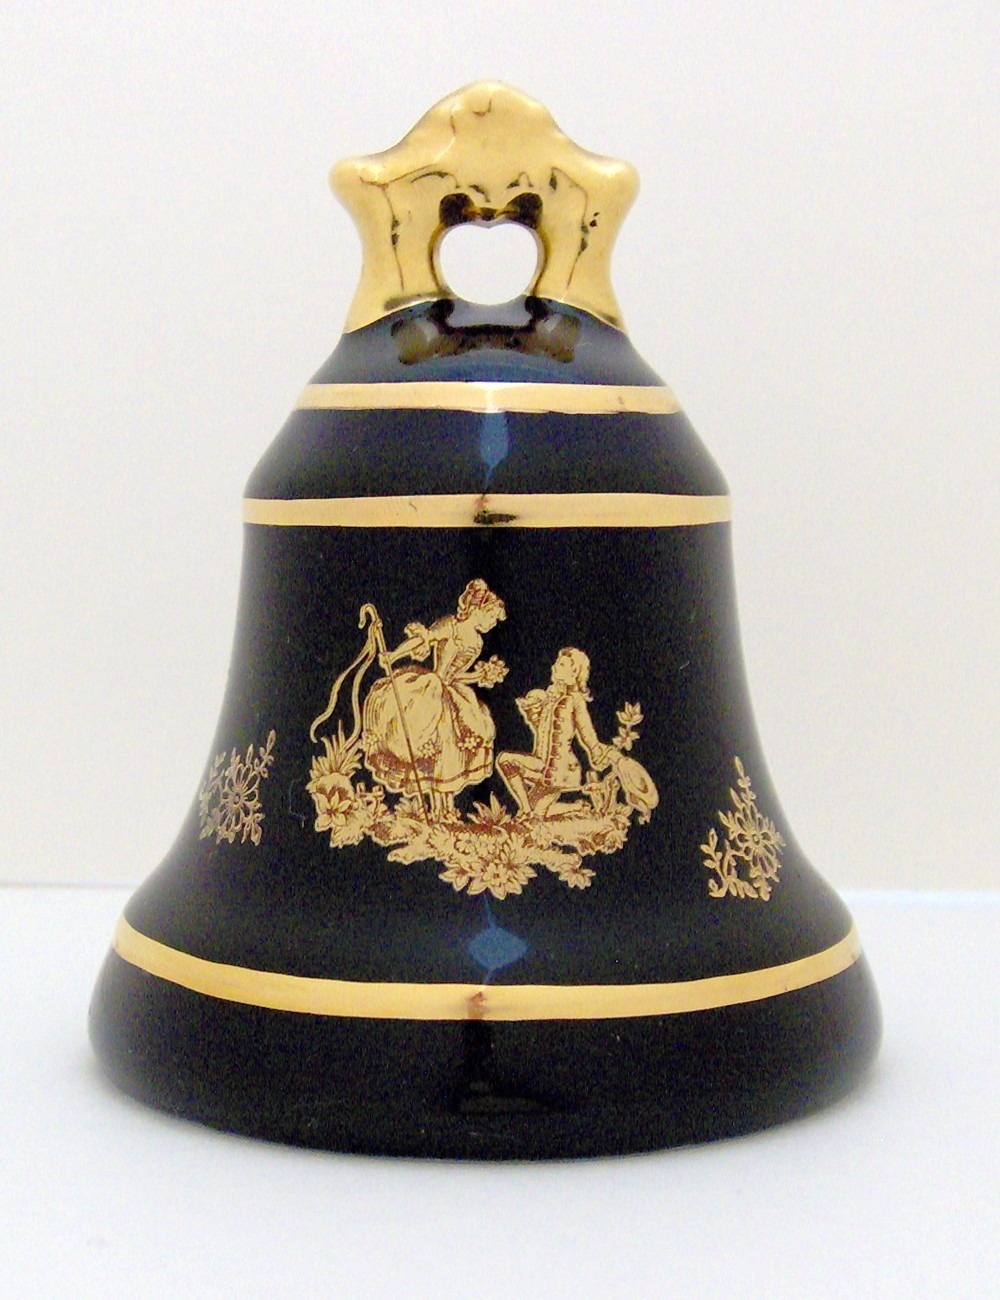 Decorative Porcelain Bell by Limoges Castel, France - $10.00